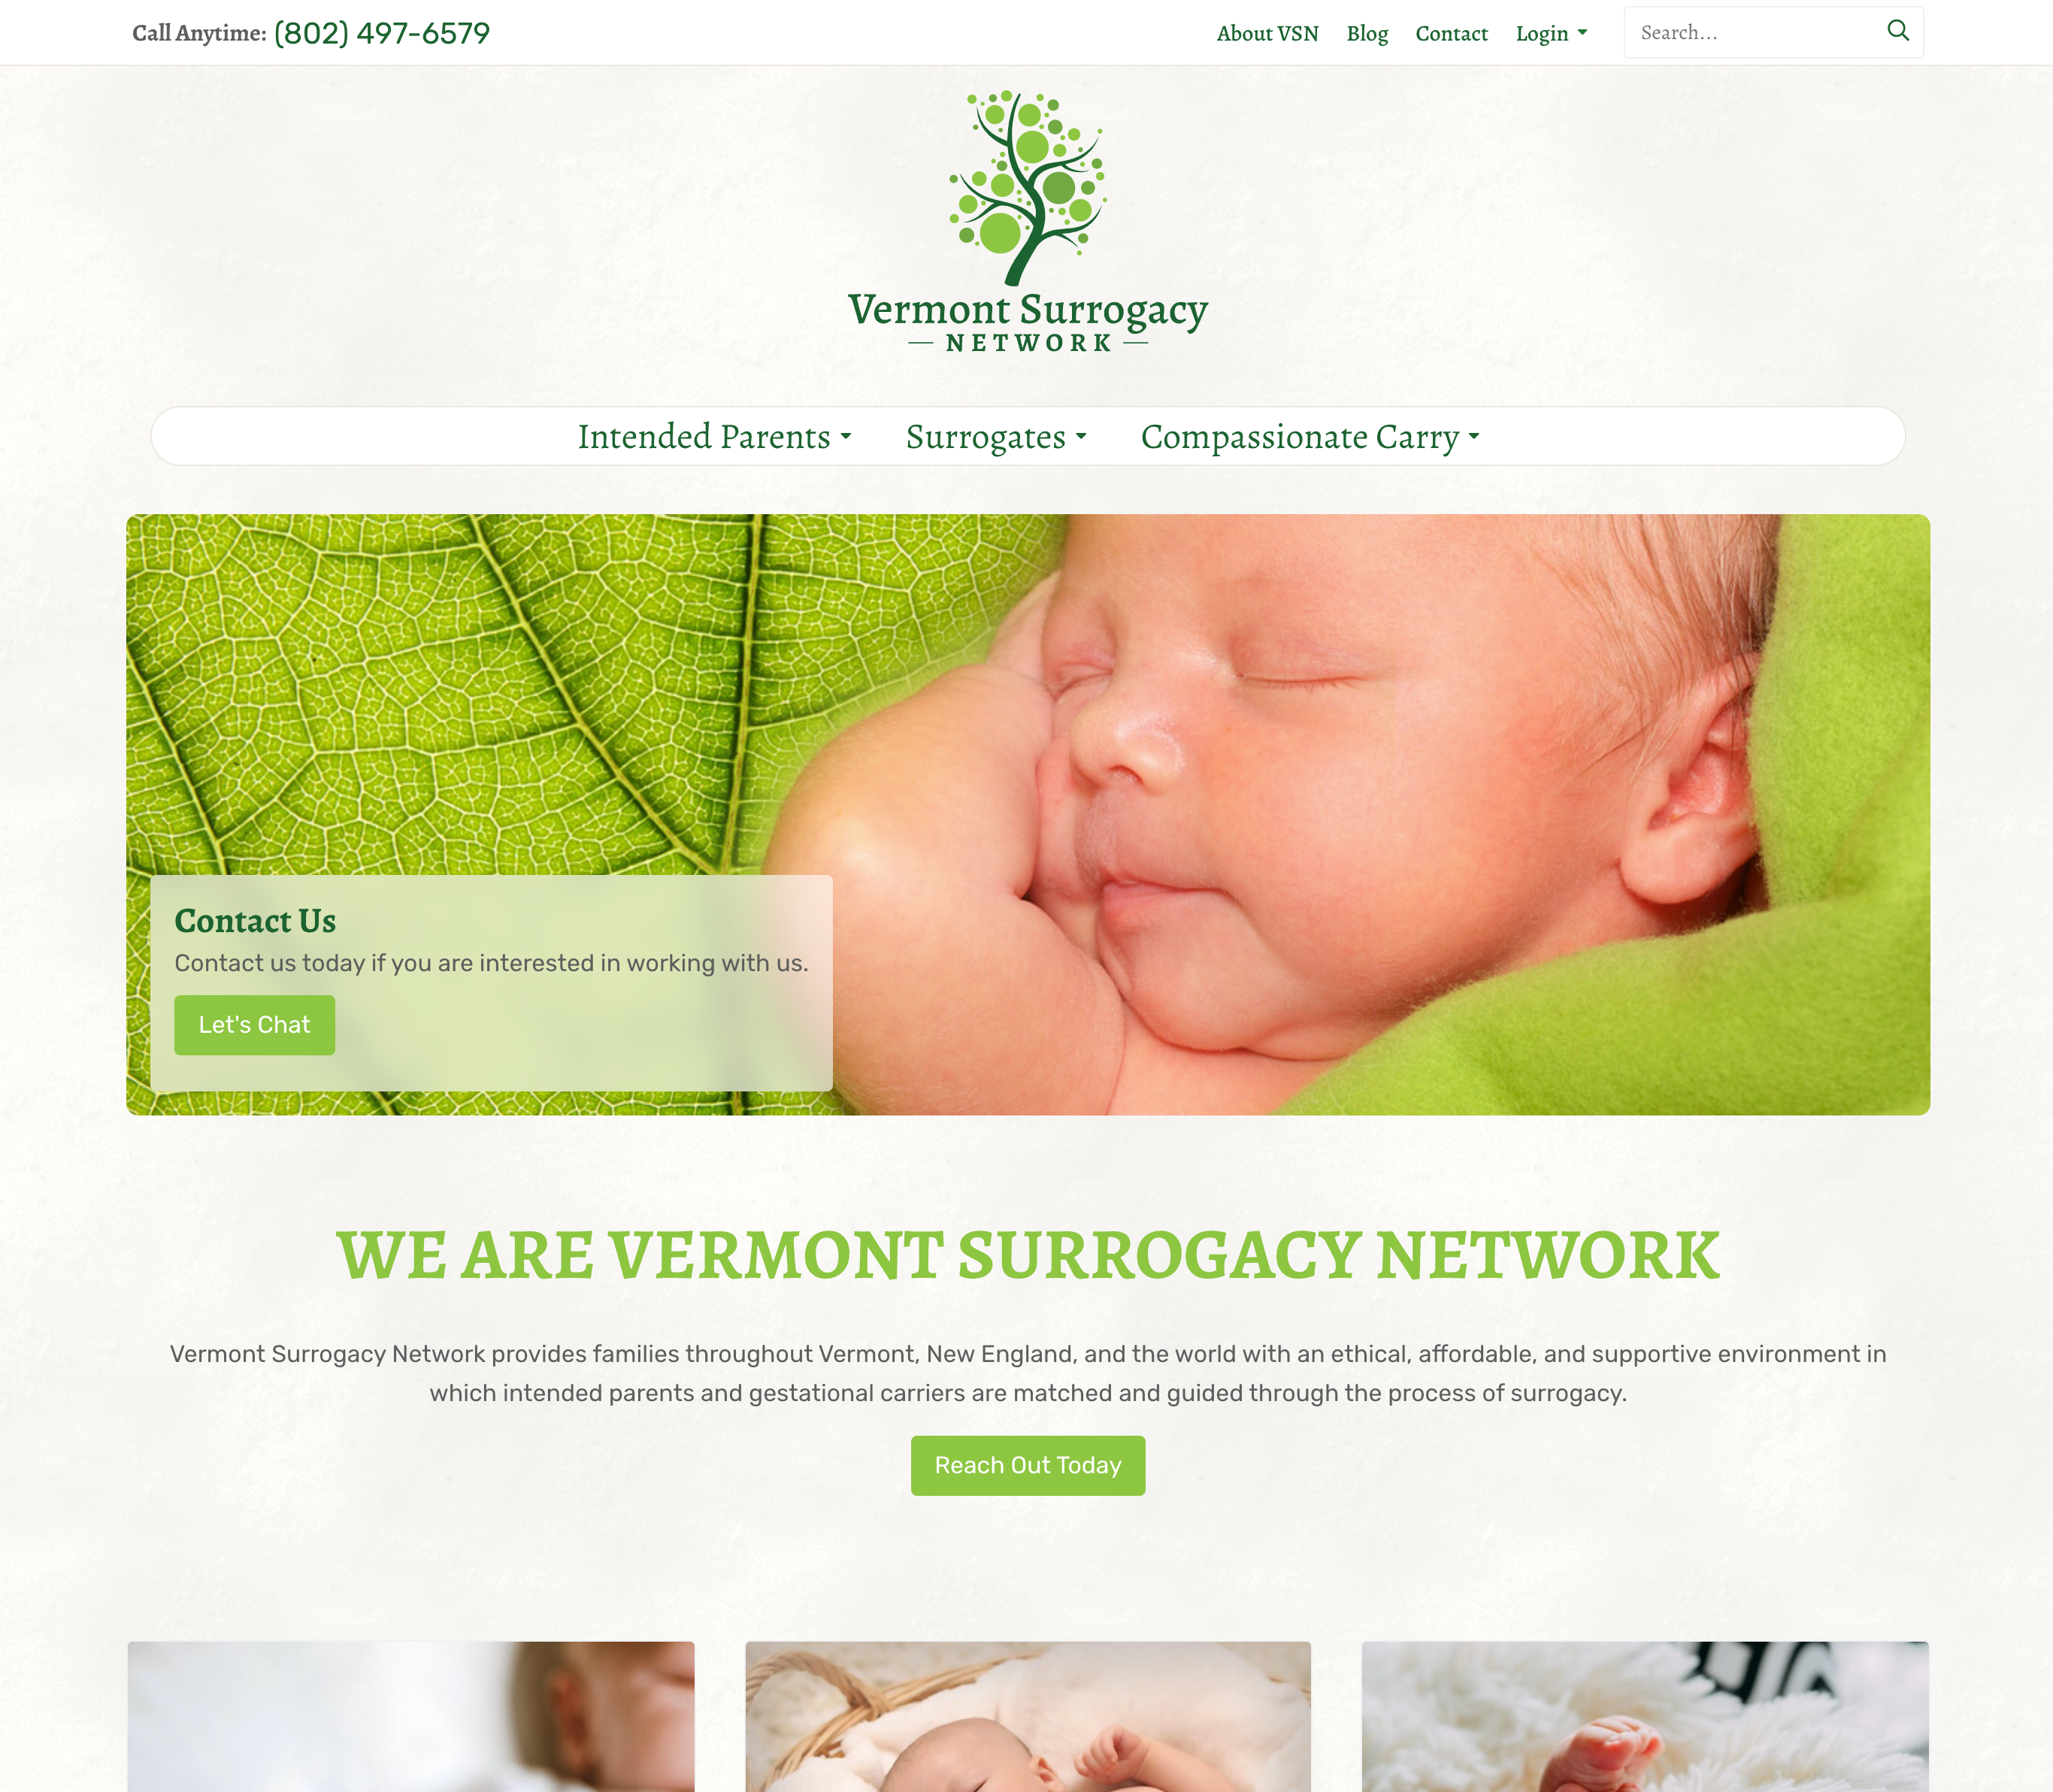 Vermont Surrogacy